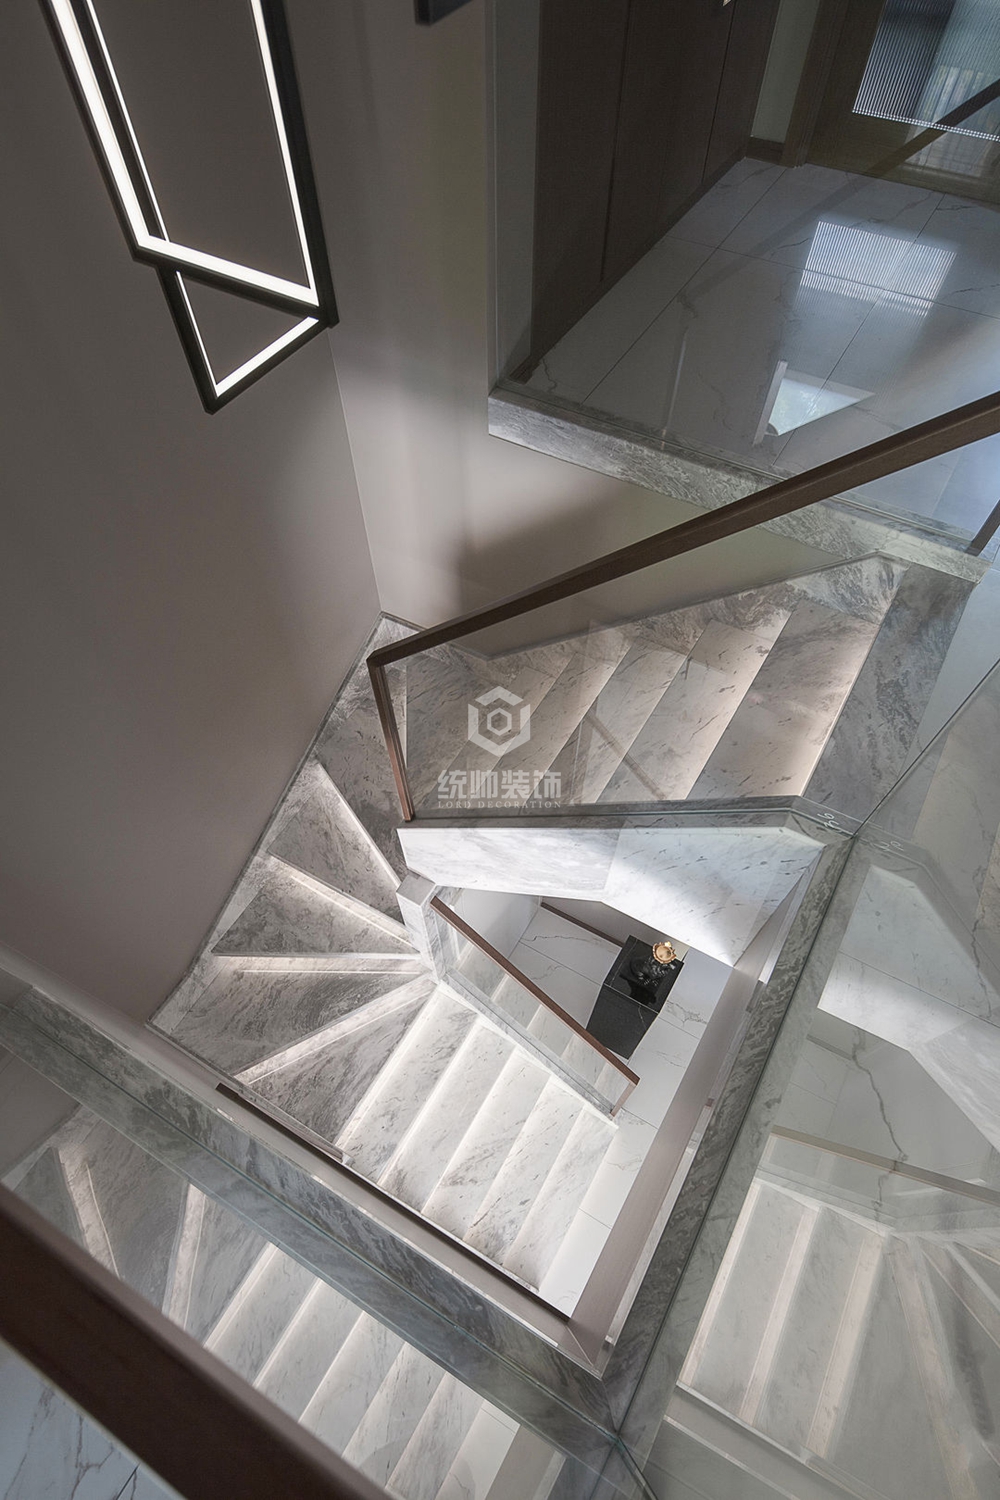 嘉定区澳丽印象家园130平方现代简约风格老房改造楼梯间装修效果图